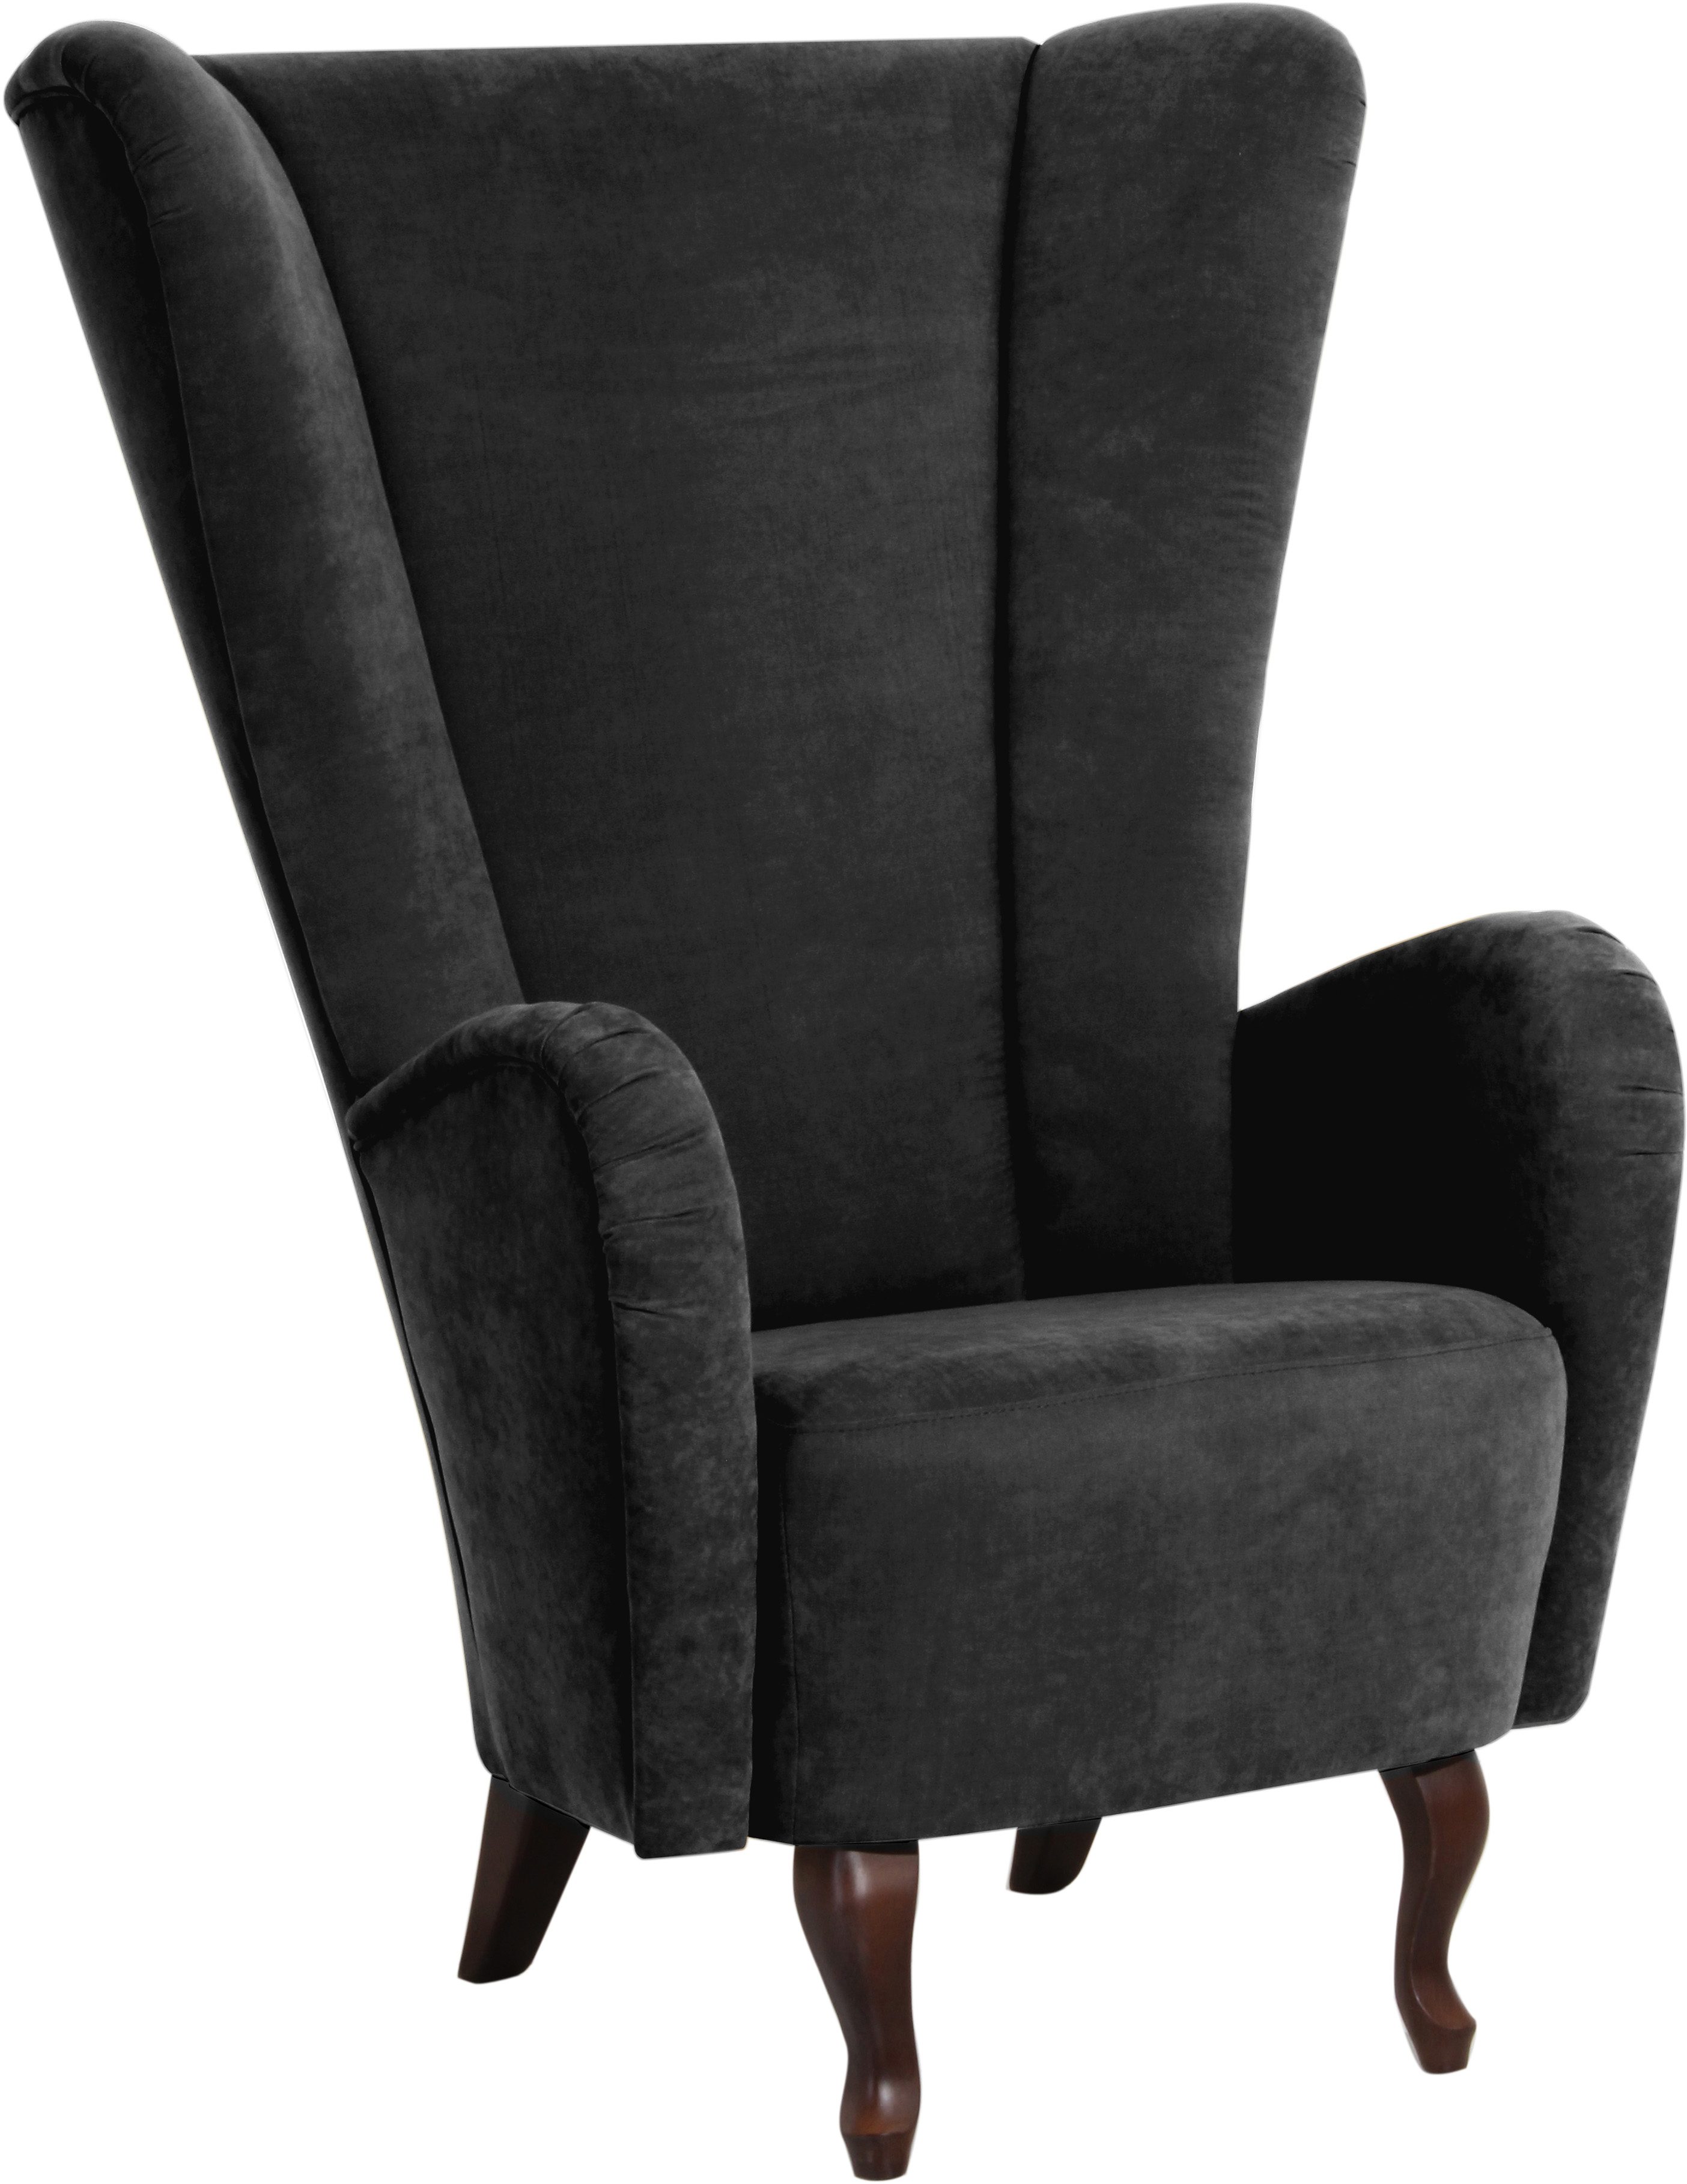 Max Winzer® Oorfauteuil Anastasia met gekrulde houten poten, stoel met een hoge rugleuning